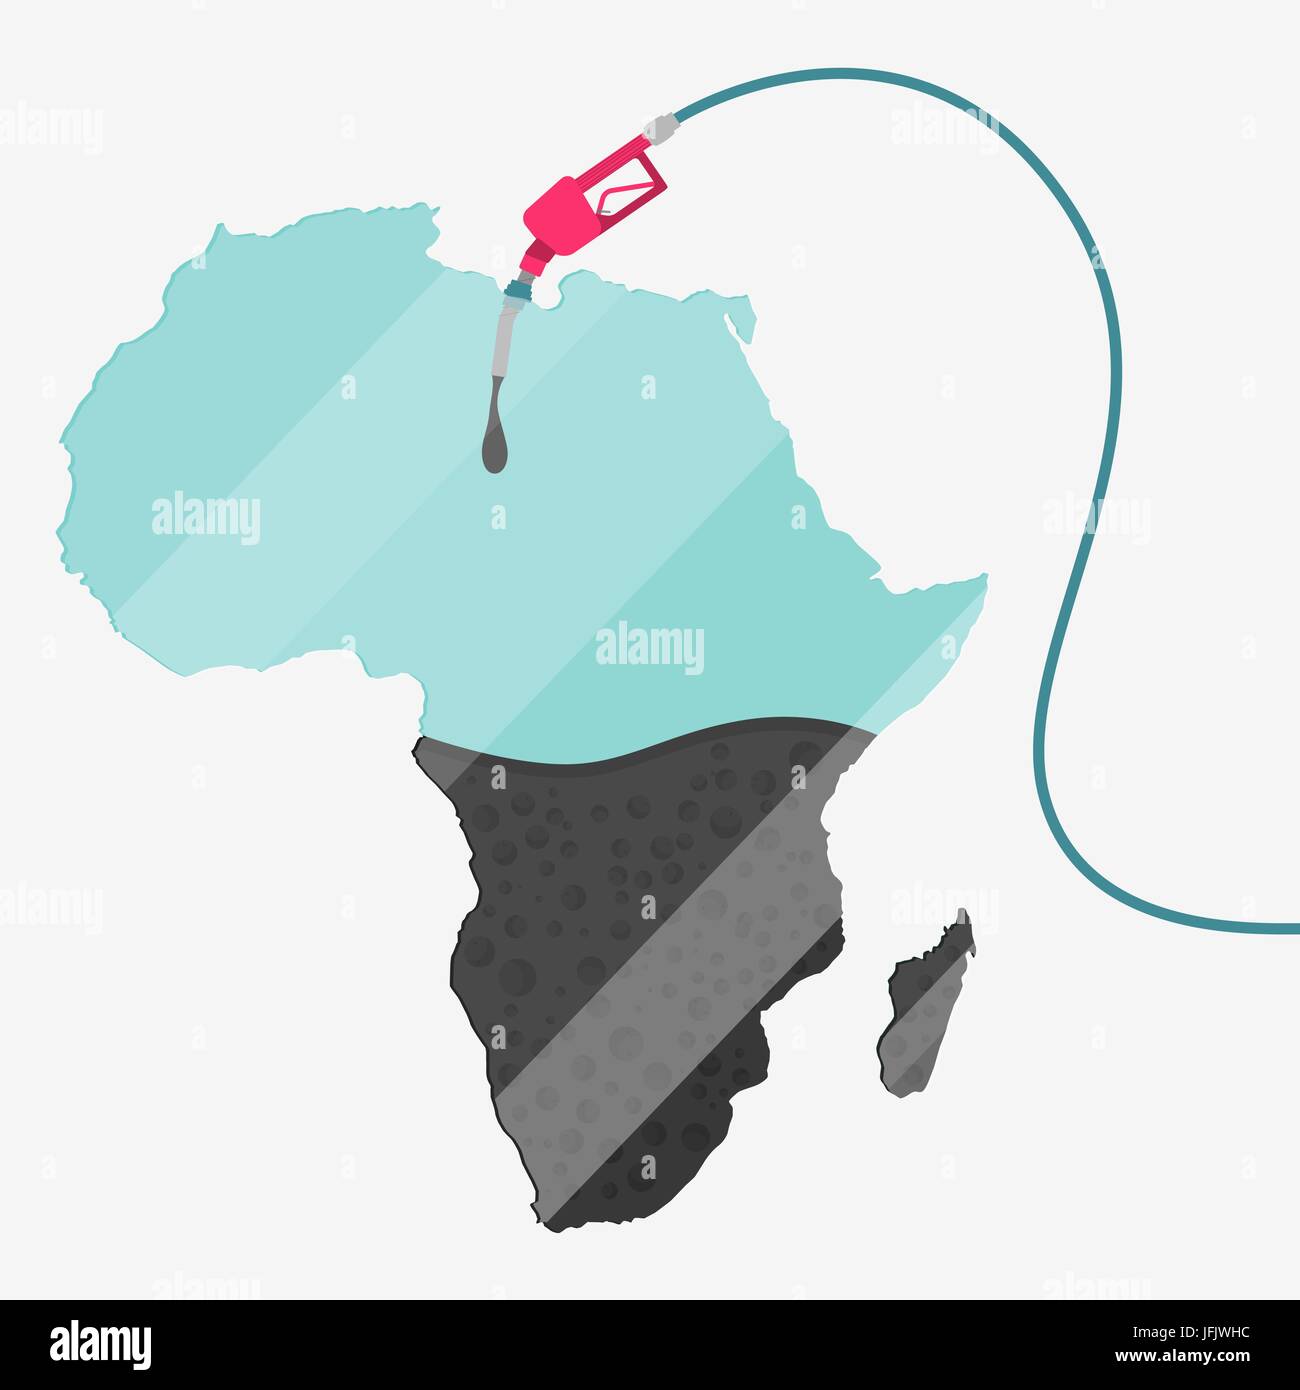 Karte von Afrika durch Öl getankt werden. Gas Pumpe betriebenen Karte. Auf der Karte gibt es Glas Reflexion. Konzeptionelle. Öl produzierenden oder Importländern. Stock Vektor